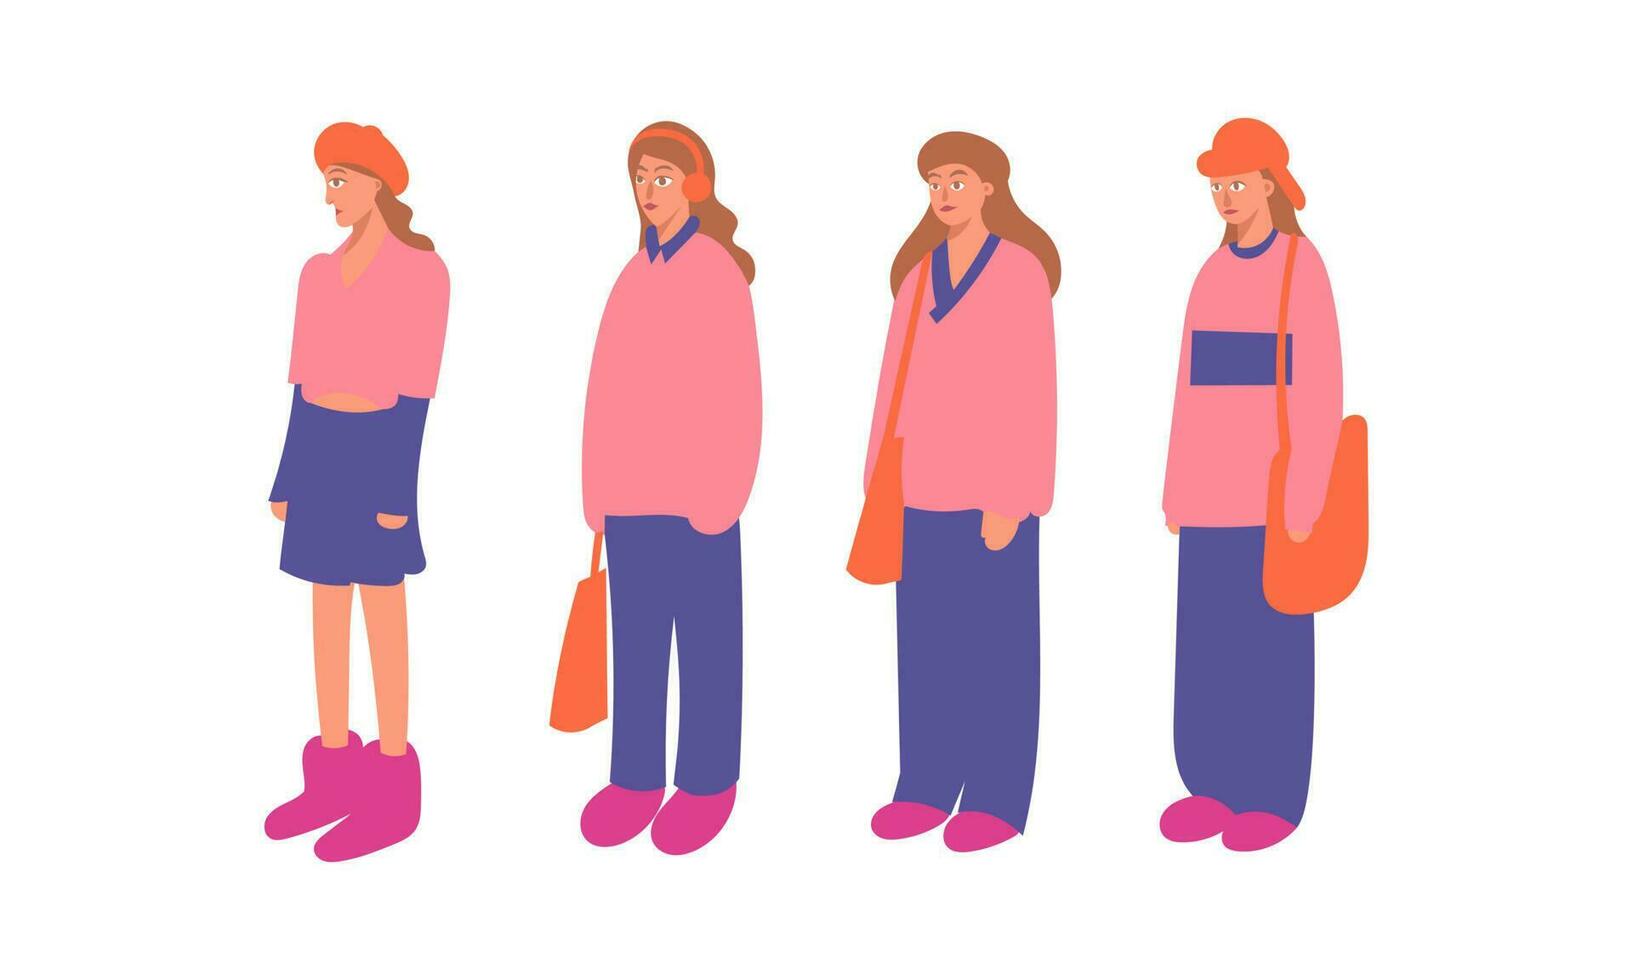 reeks van verschillend poses van een meisje in een roze jas. vector illustratie